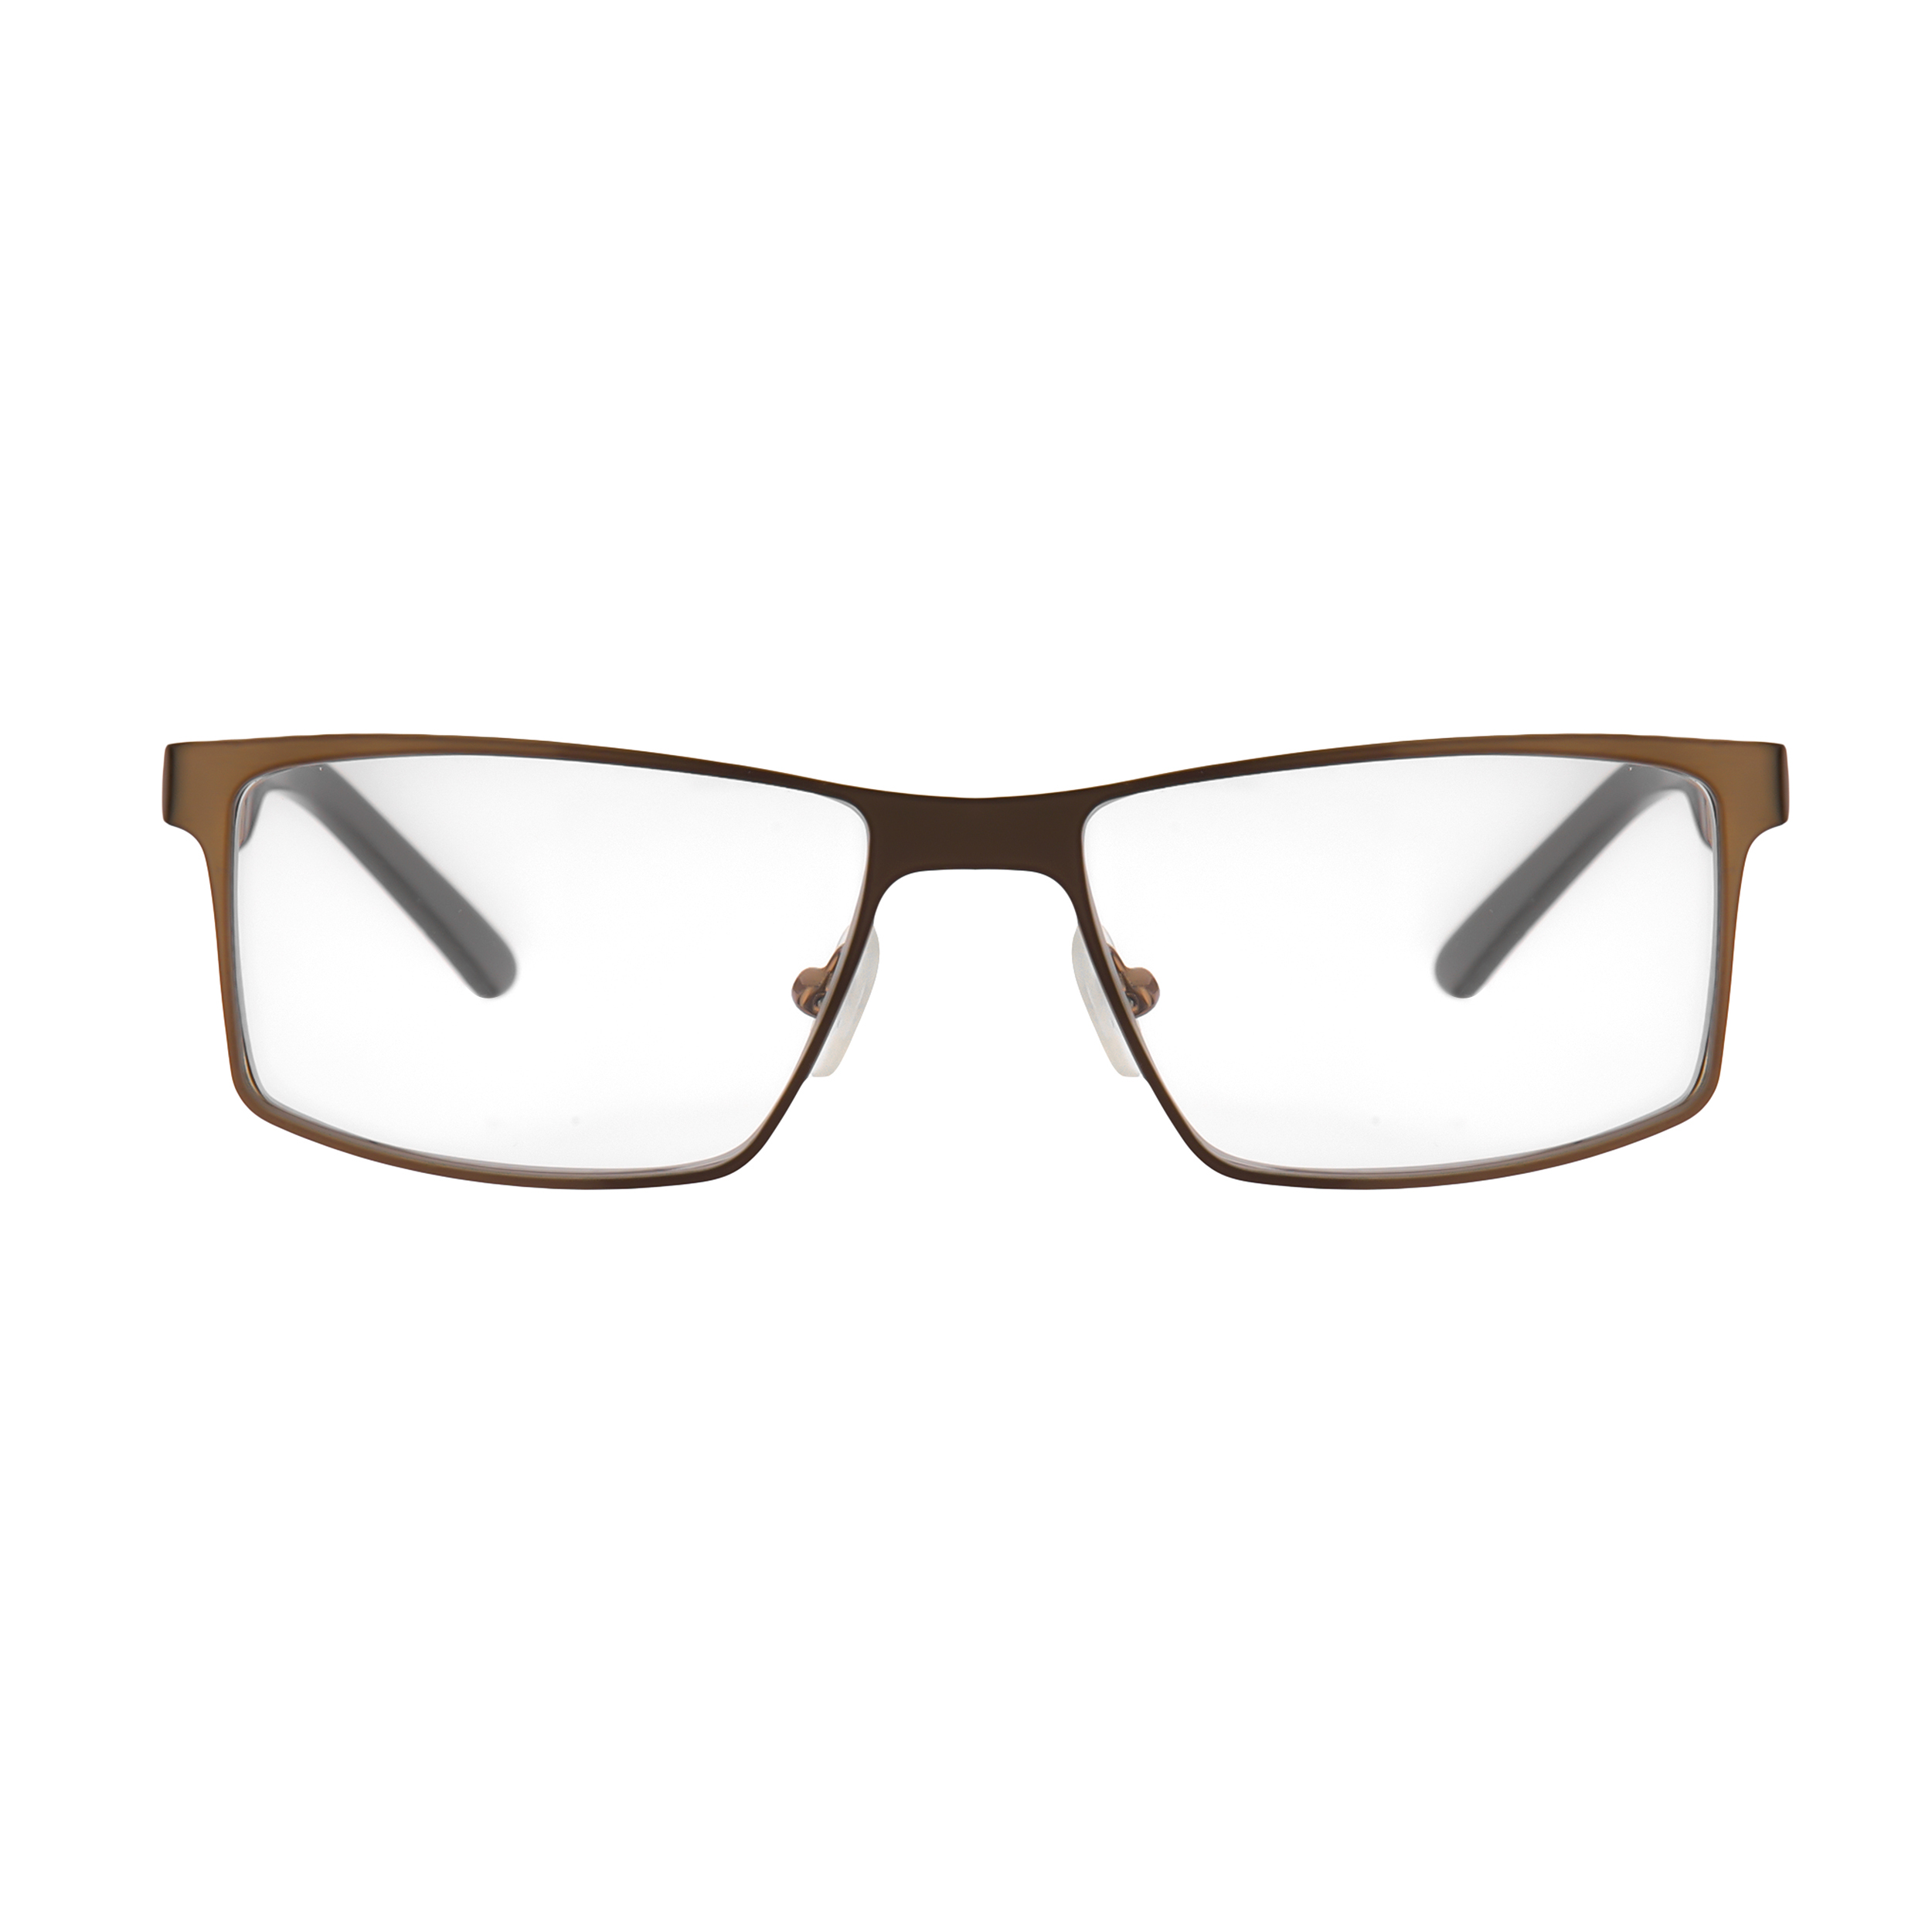 فریم عینک طبی هوگو باس مدل 82008